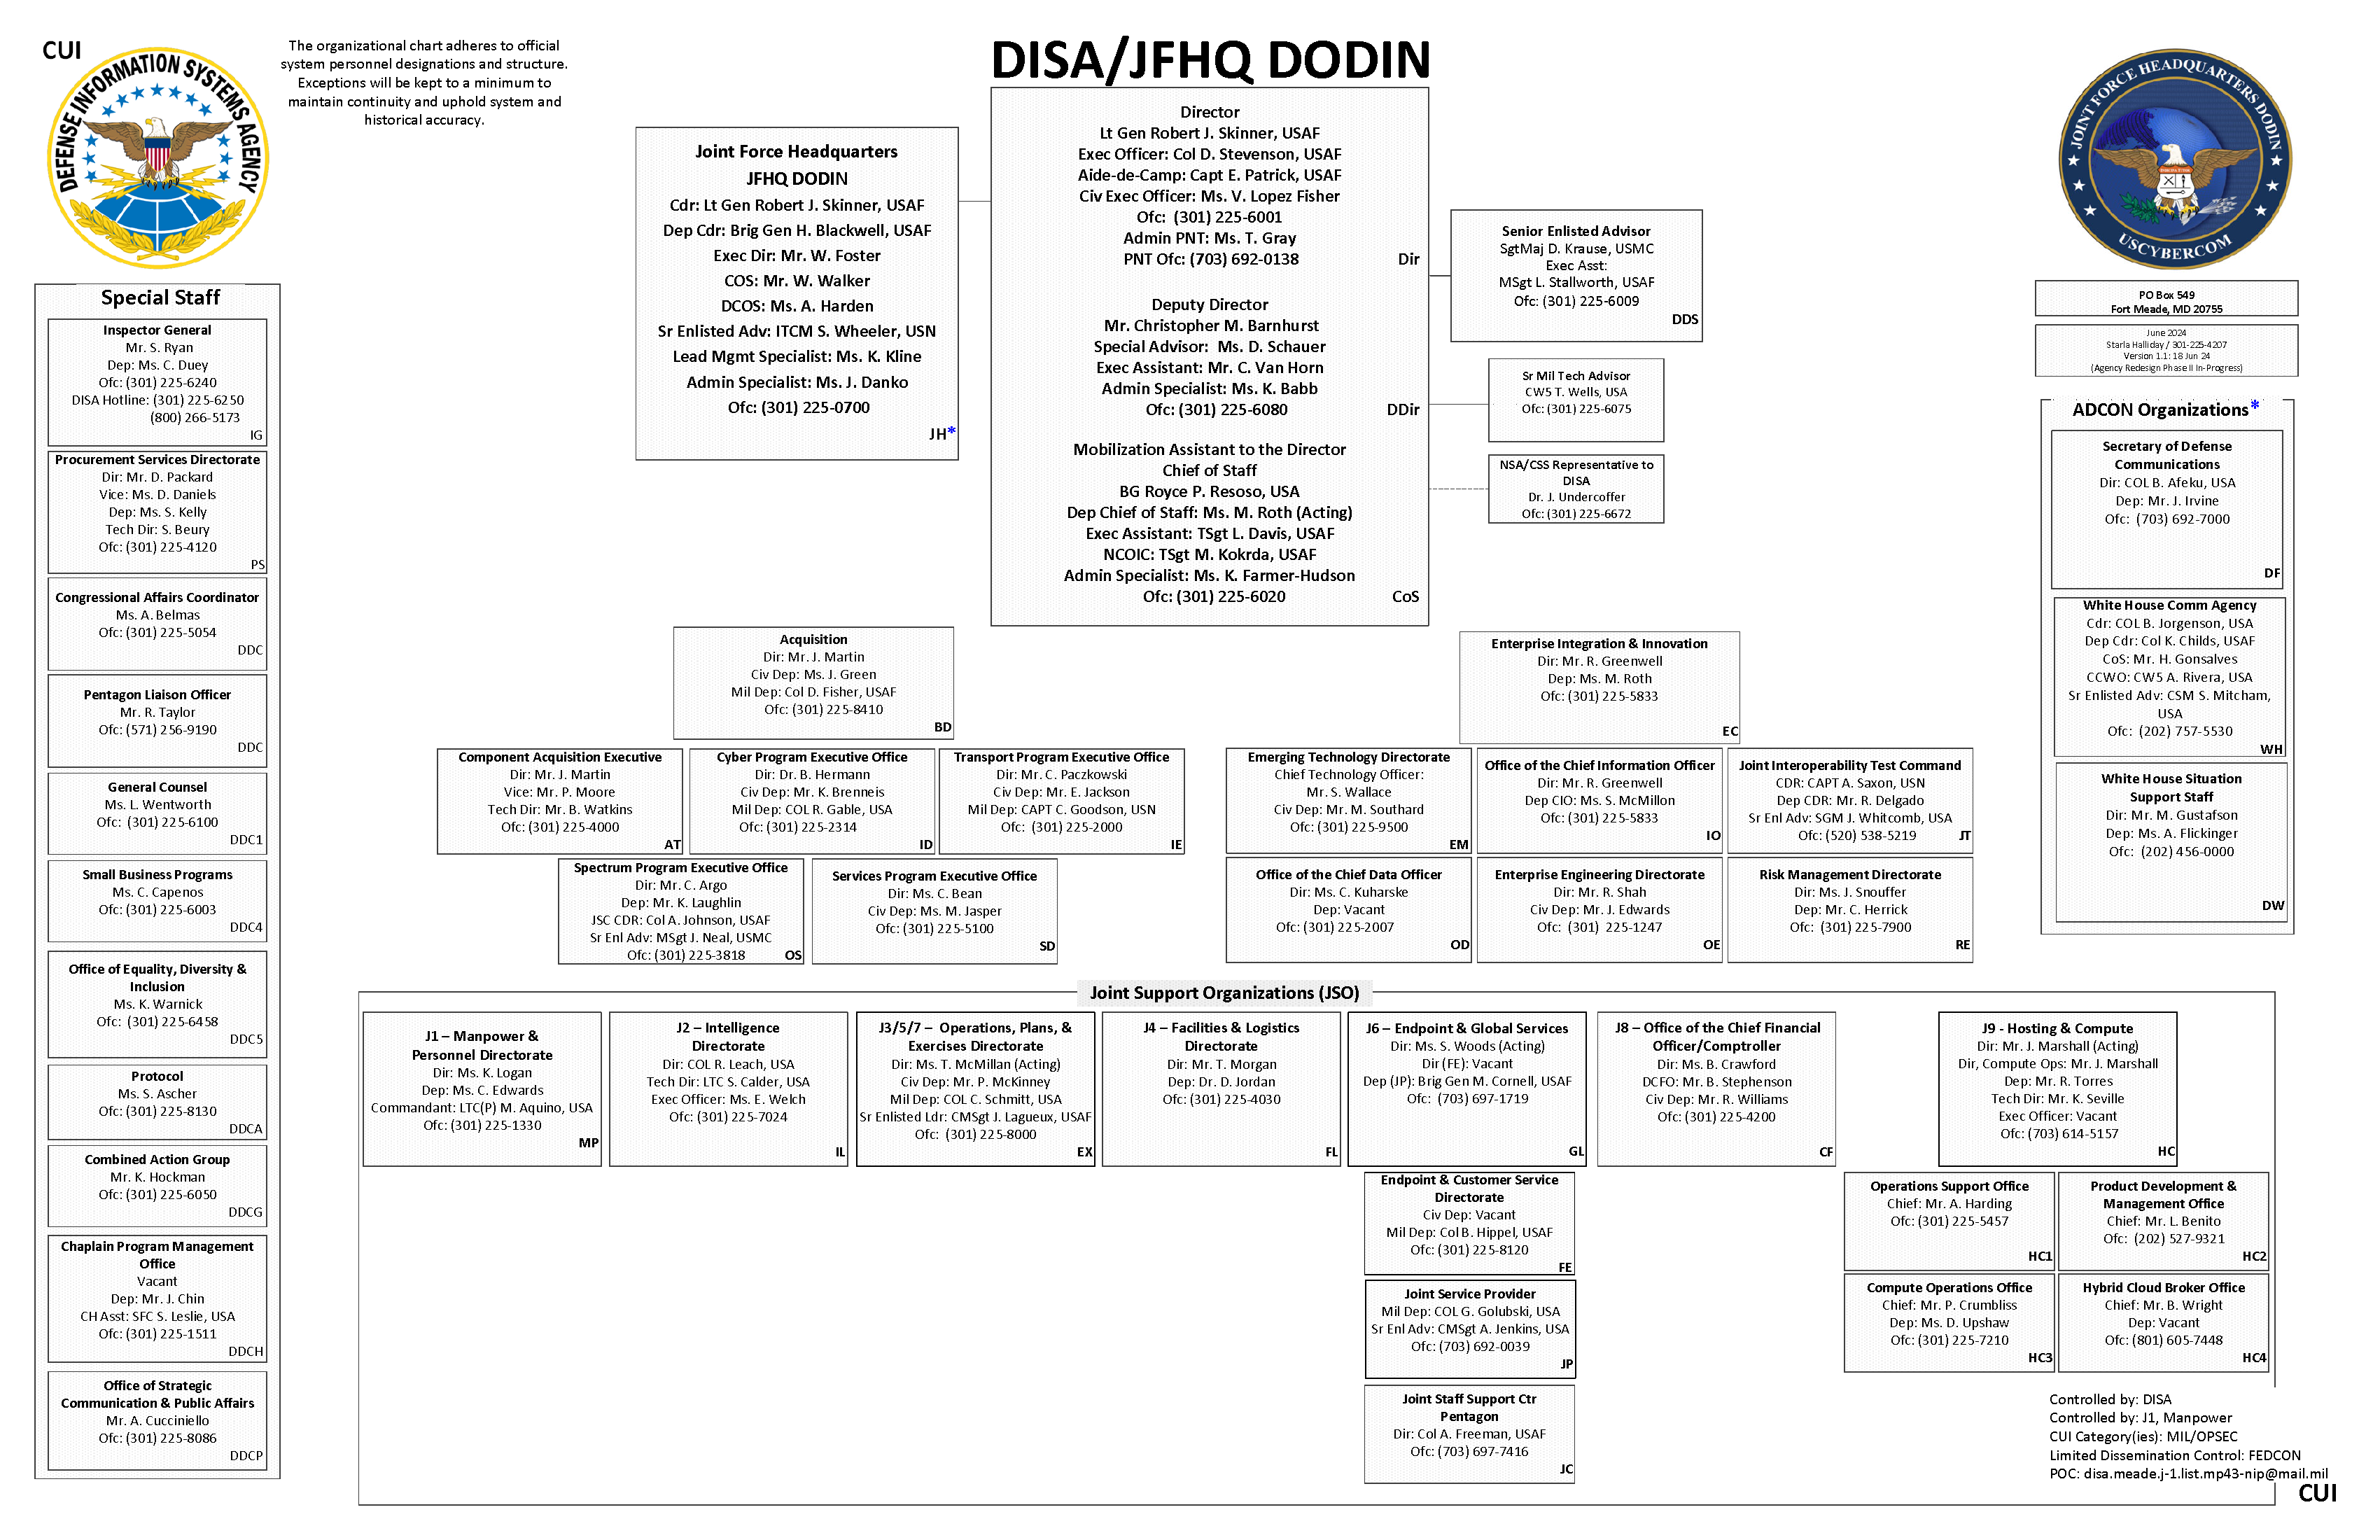 DISA's organizational chart page 1